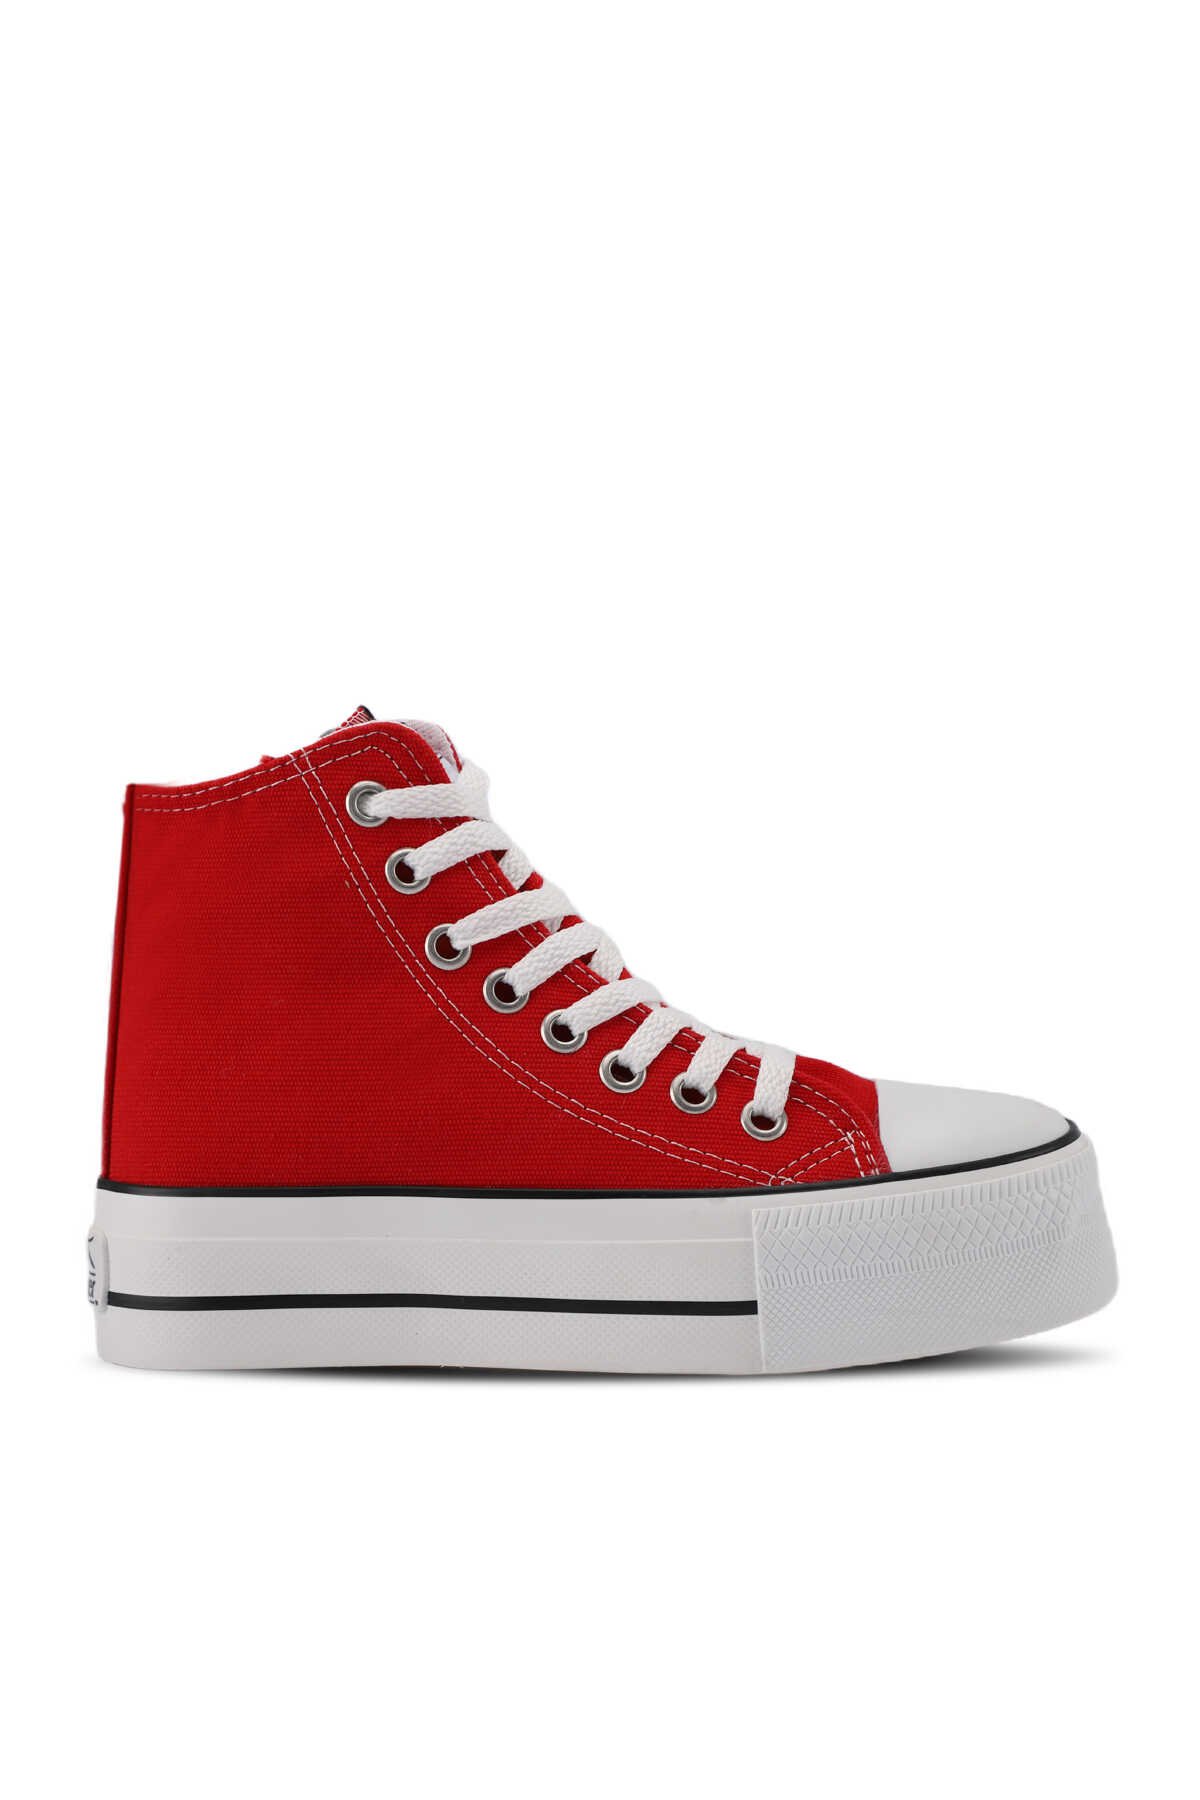 Slazenger - Slazenger SUPER HIGH I Sneaker Kadın Ayakkabı Kırmızı